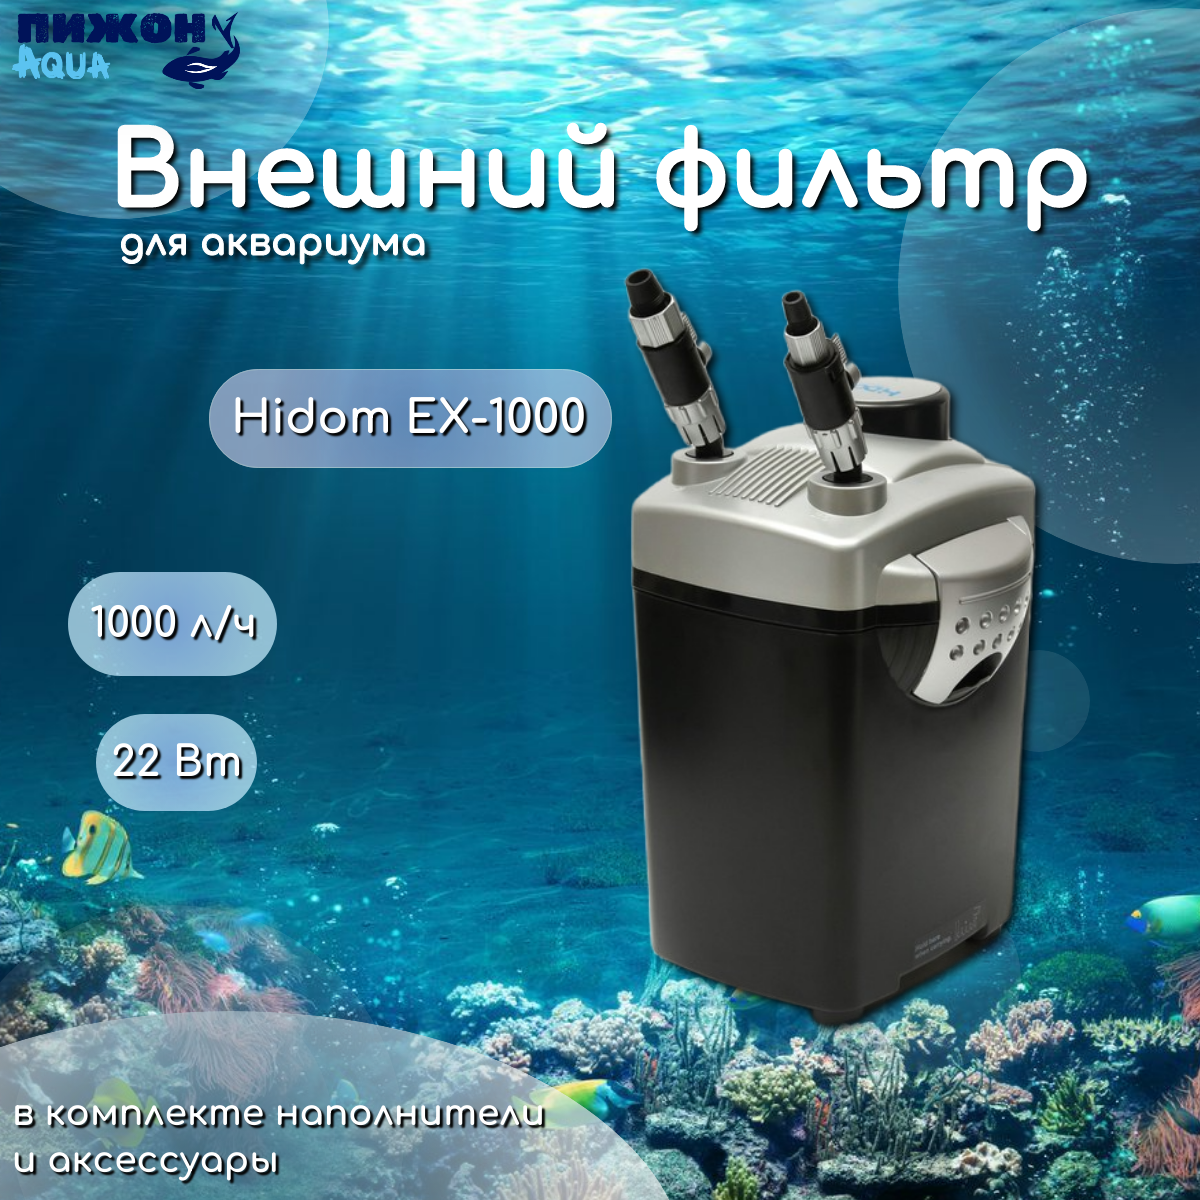 Внешний фильтр Hidom EX-1000 с комплектом наполнителей и аксессуаров 1000 л/ч 22 Вт